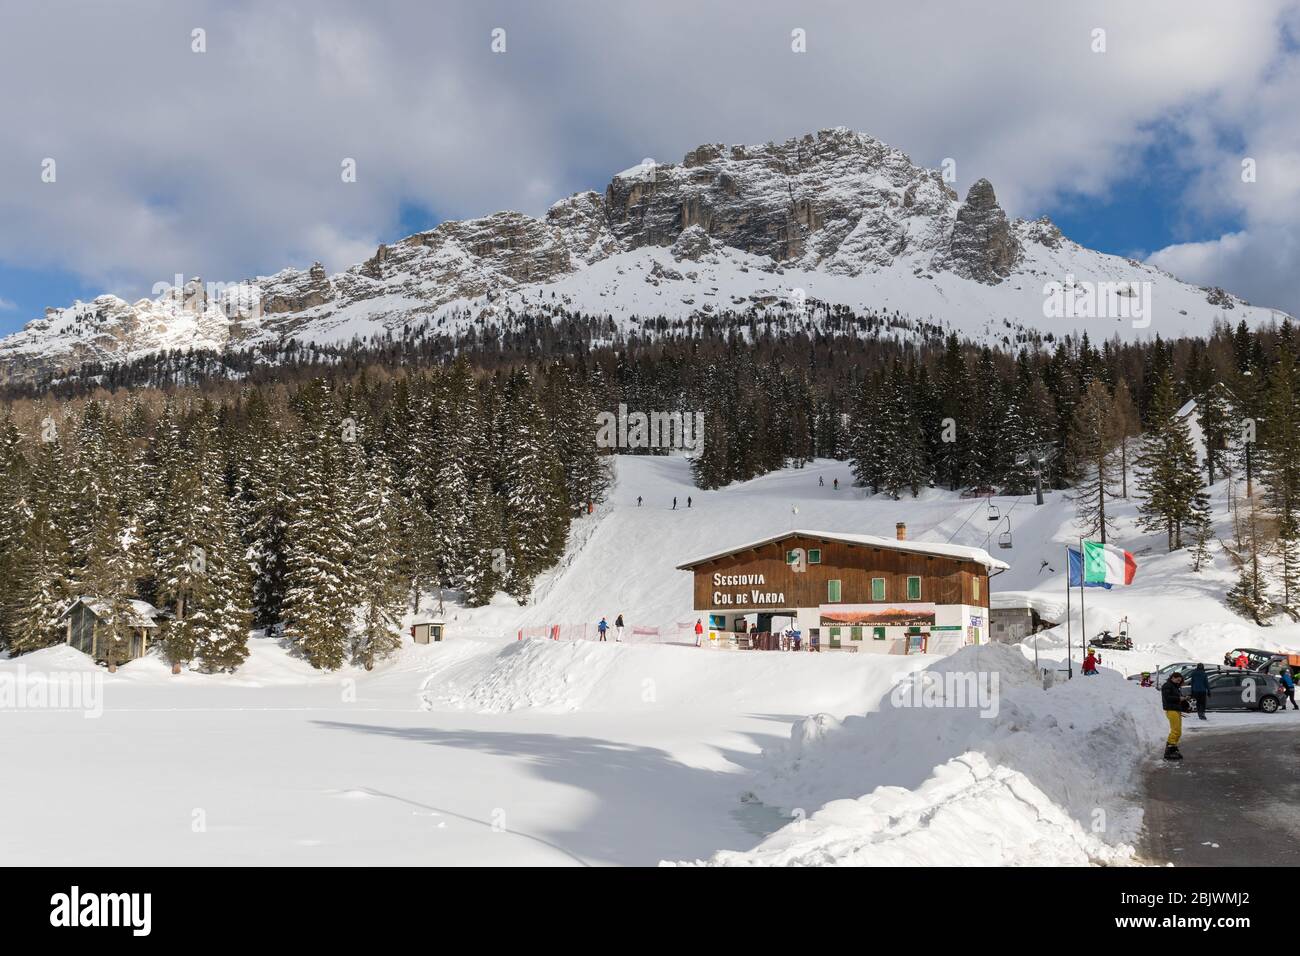 Misurina - Col de Varda ski resort, Dolomites, Italy Stock Photo